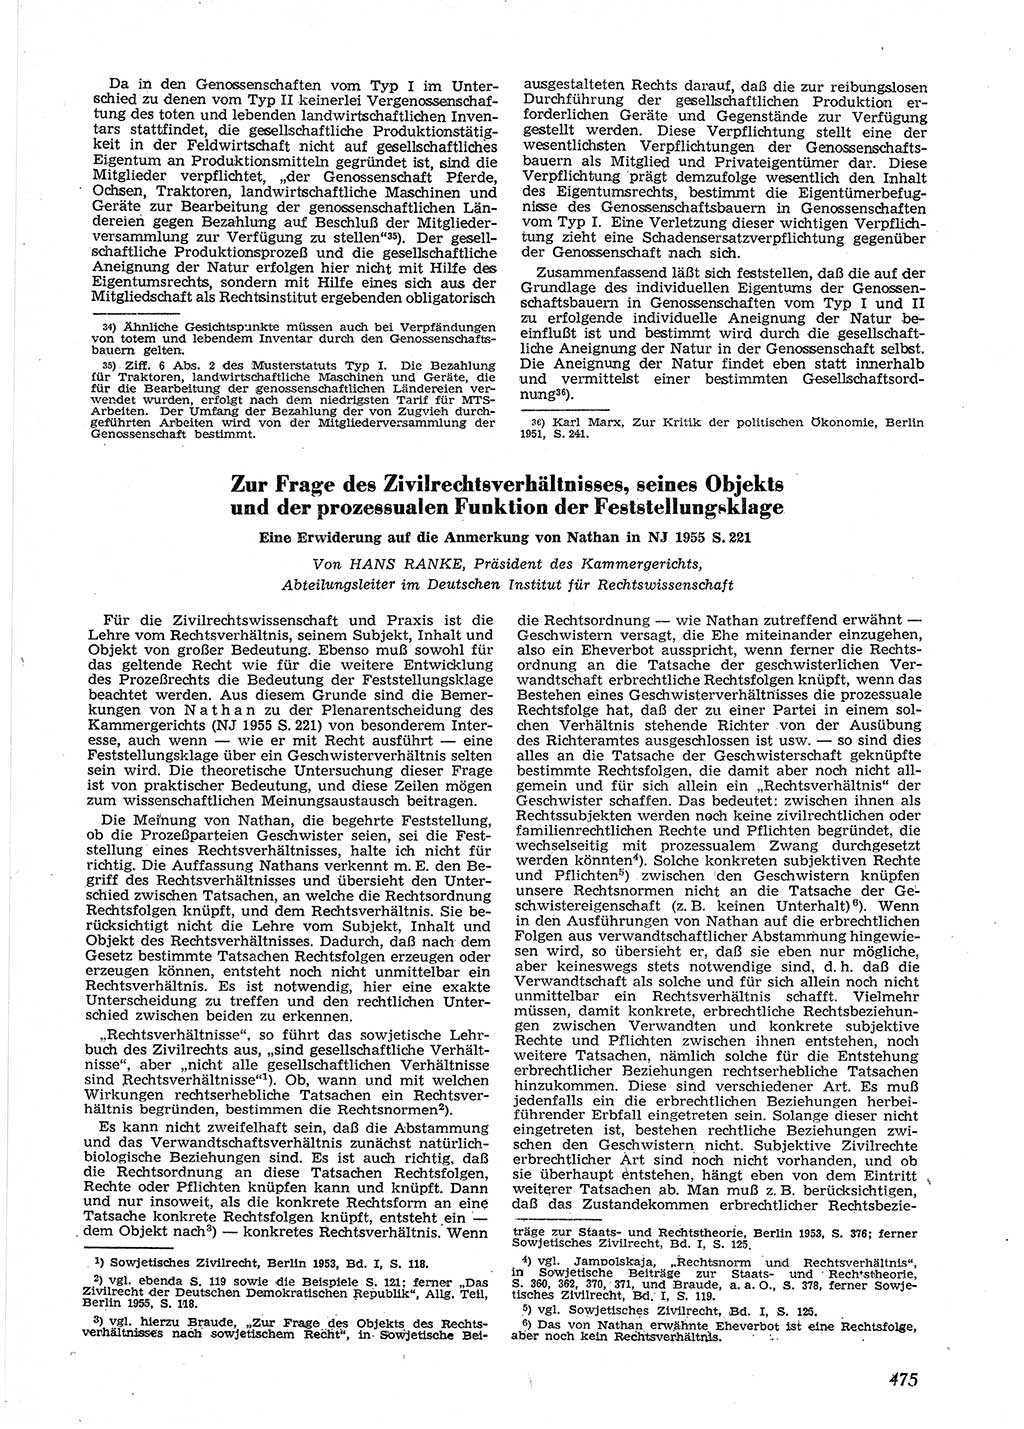 Neue Justiz (NJ), Zeitschrift für Recht und Rechtswissenschaft [Deutsche Demokratische Republik (DDR)], 9. Jahrgang 1955, Seite 475 (NJ DDR 1955, S. 475)